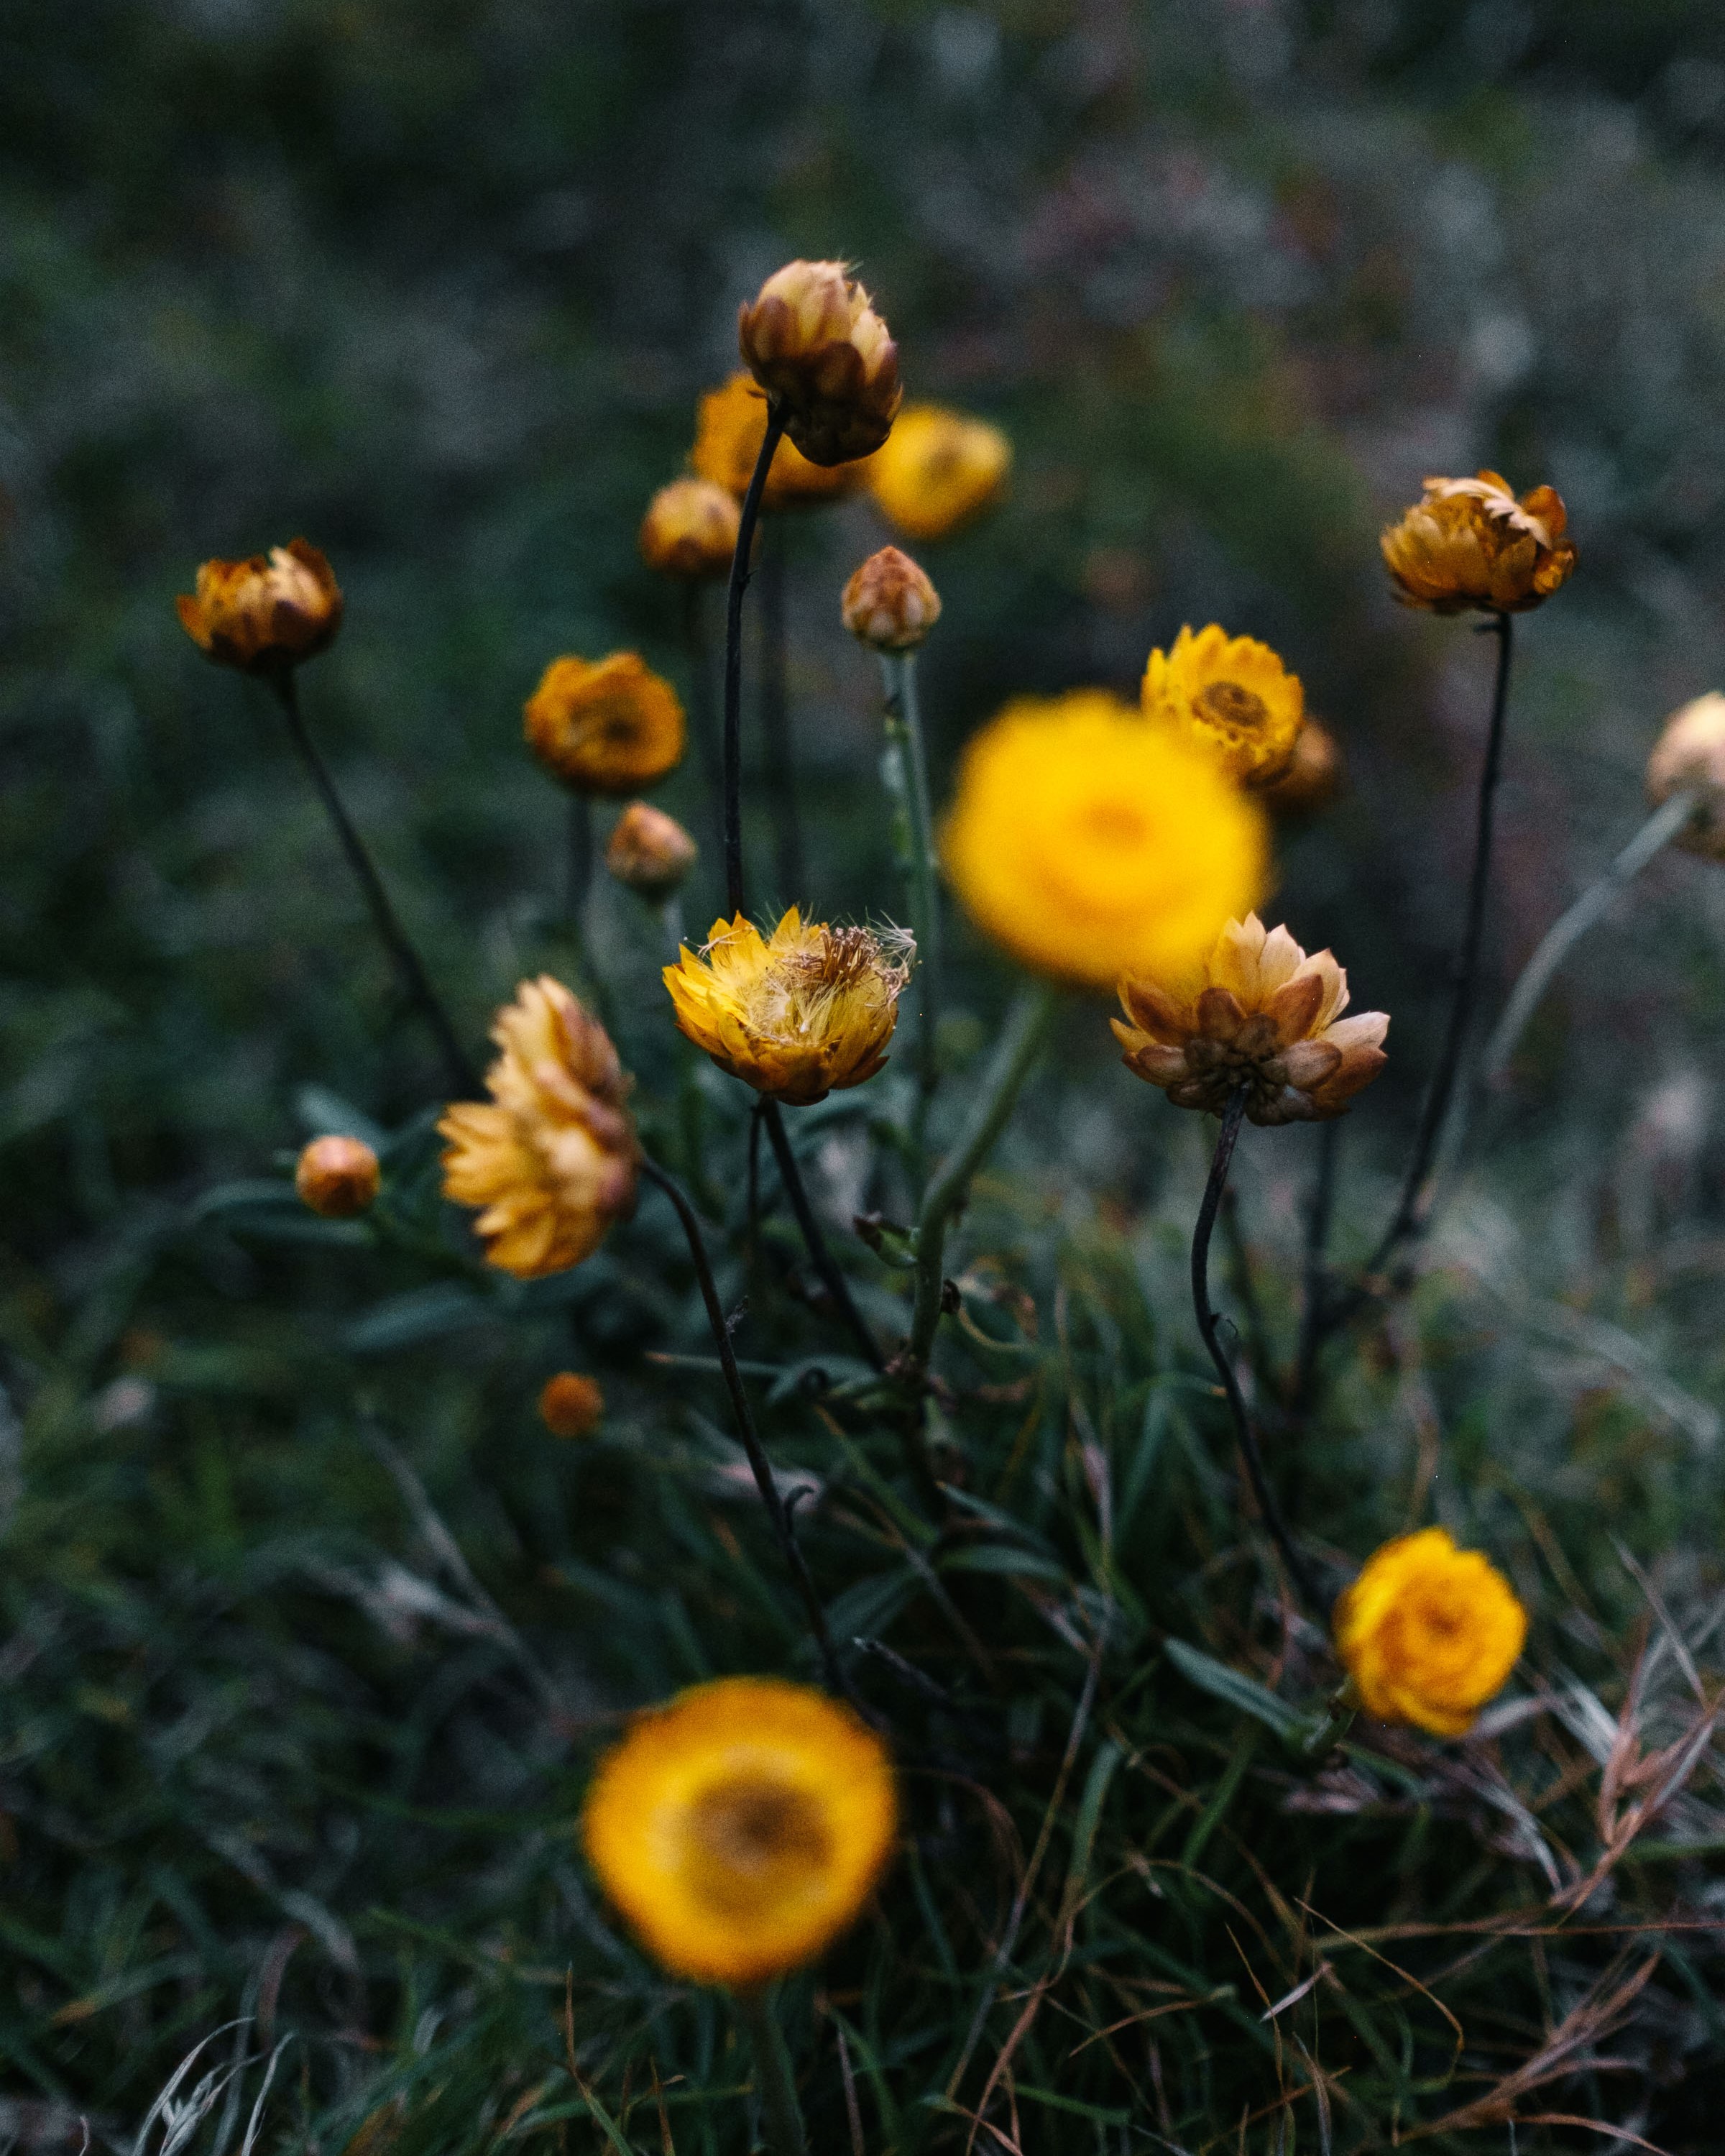 The Golden Everlasting flower (Xerochrysum bracteatum). Photo: Noah Strammbach